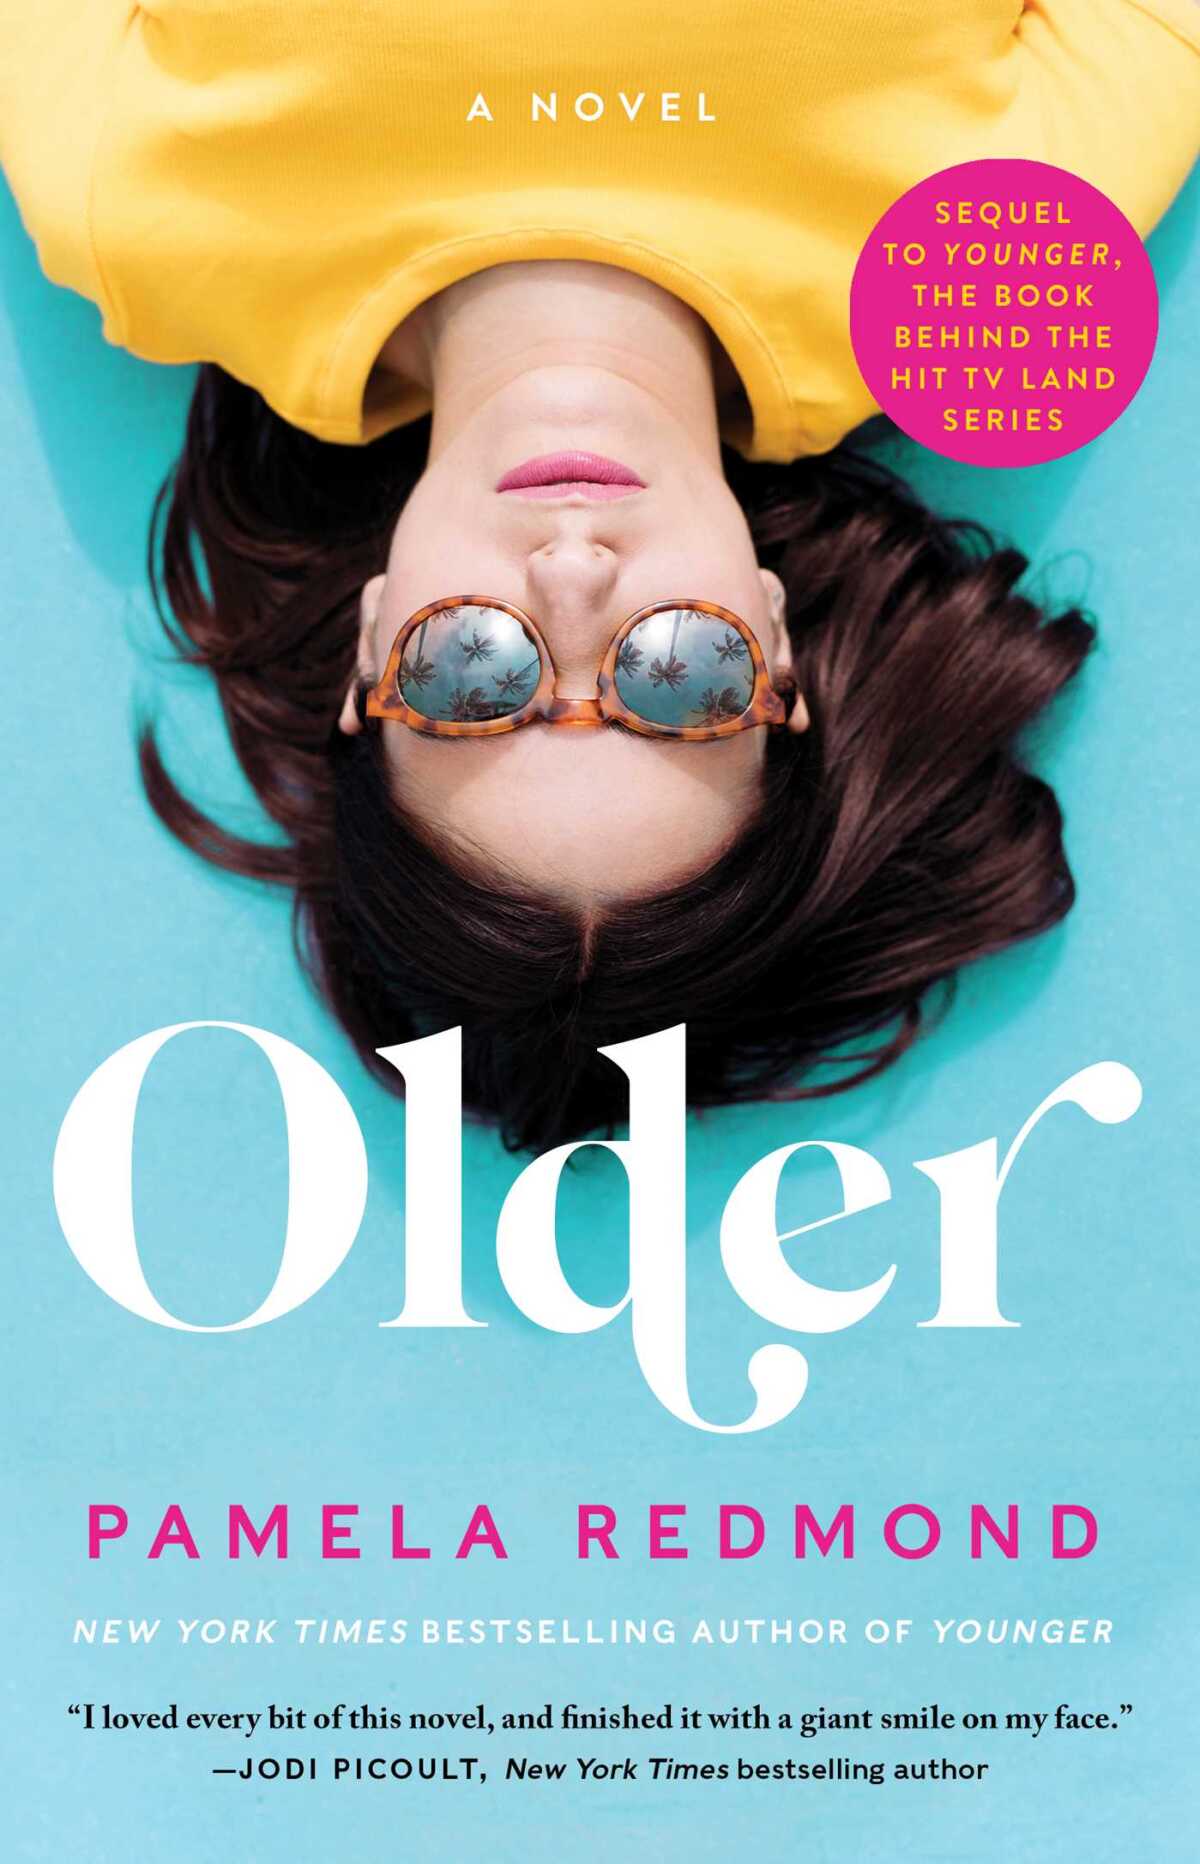 Book jacket for "Older" by Pamela Redmond.